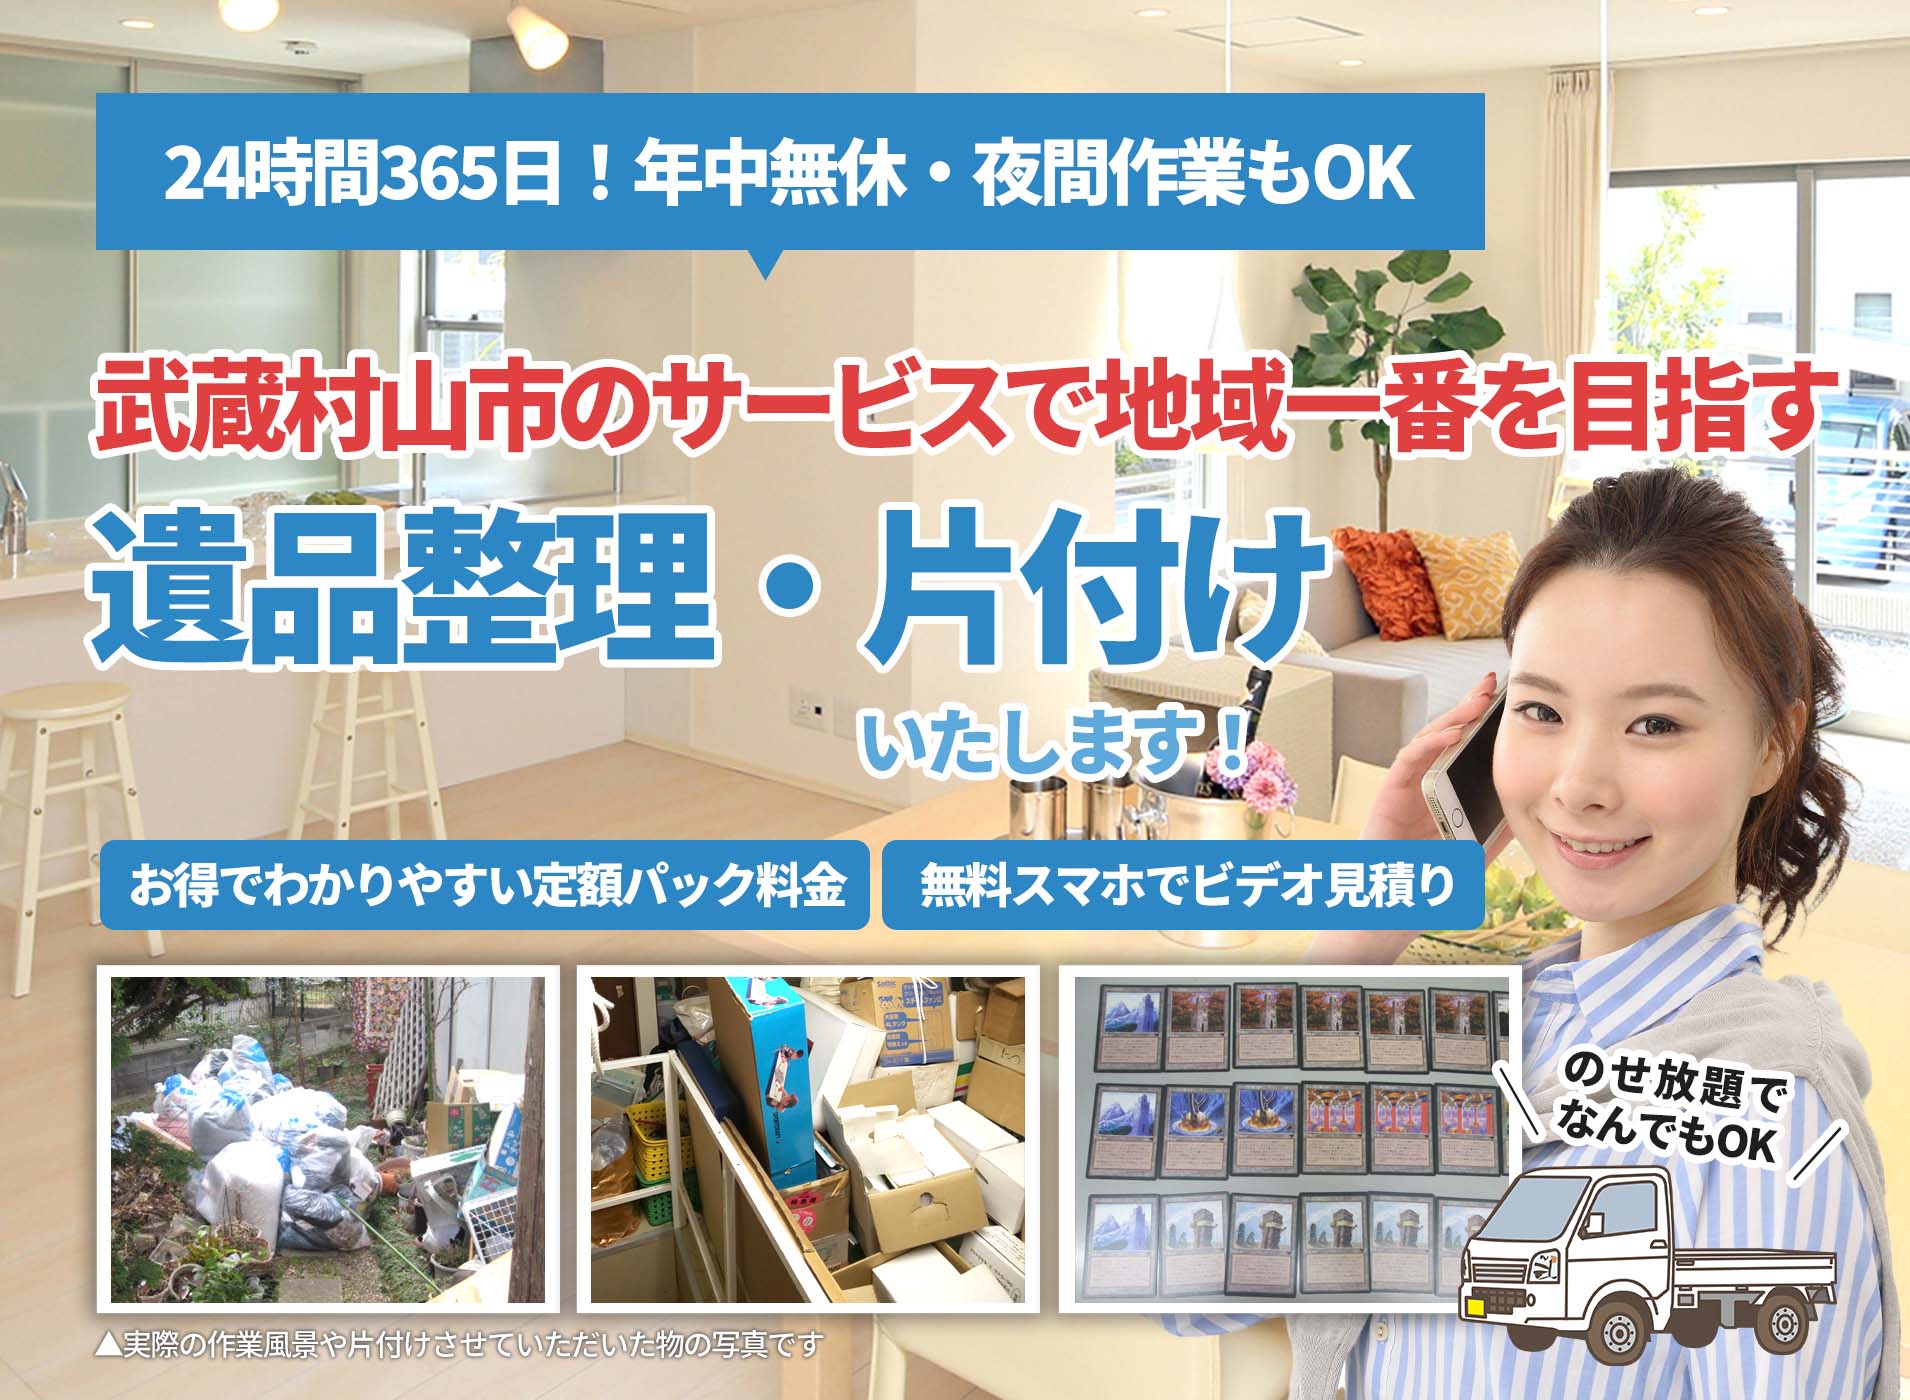 武蔵村山市のサービスで地域一番を目指すＬＴＪ遺品整理隊の遺品整理サービス